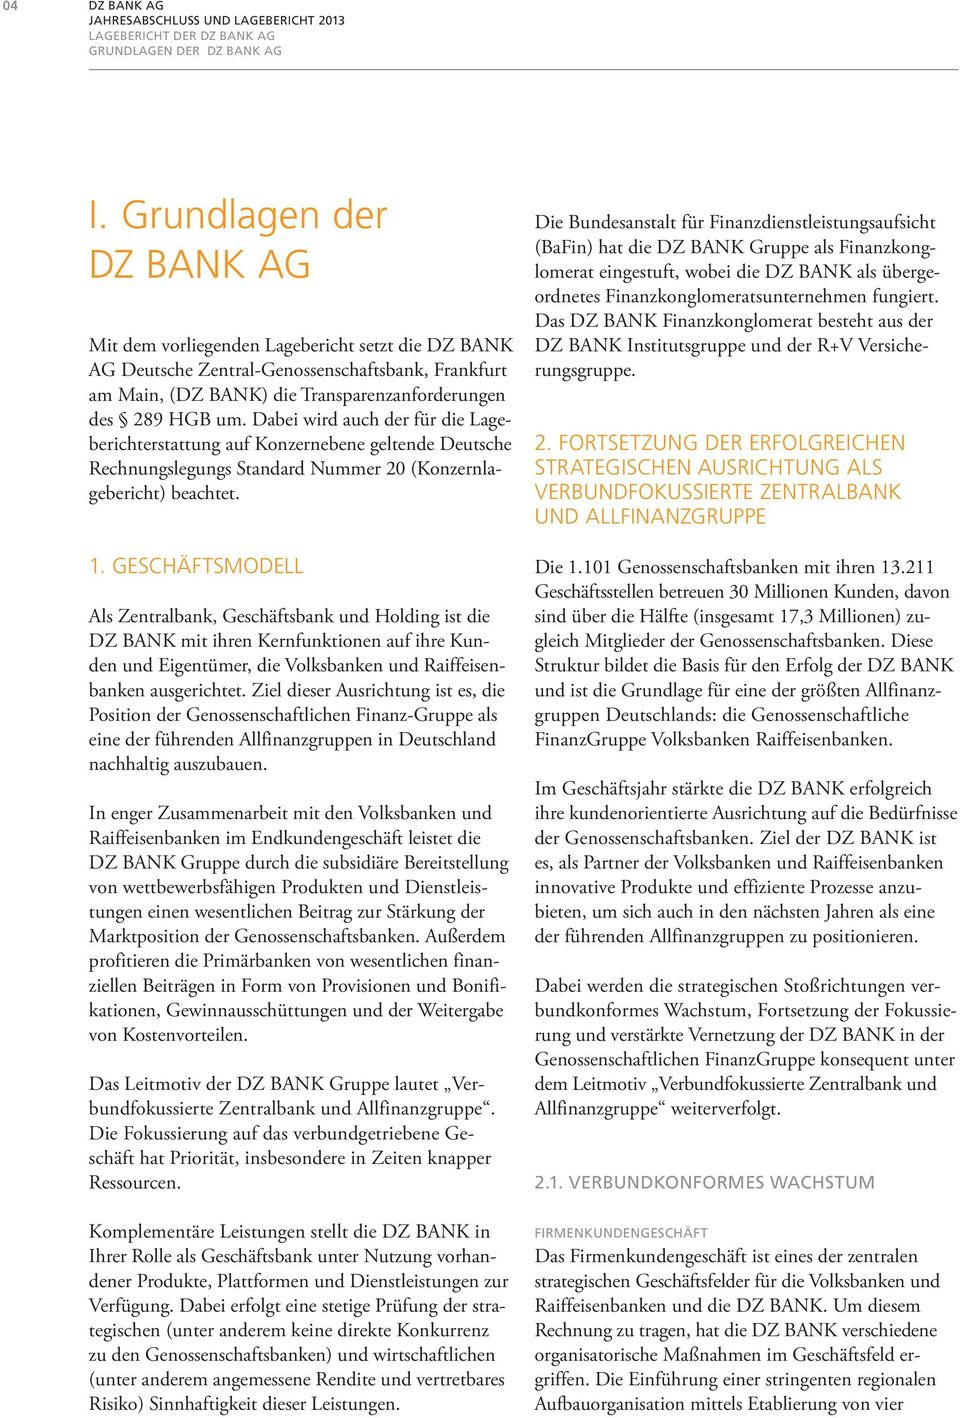 Dabei wird auch der für die Lageberichterstattung auf Konzernebene geltende Deutsche Rechnungslegungs Standard Nummer 20 (Konzernlagebericht) beachtet. 1.